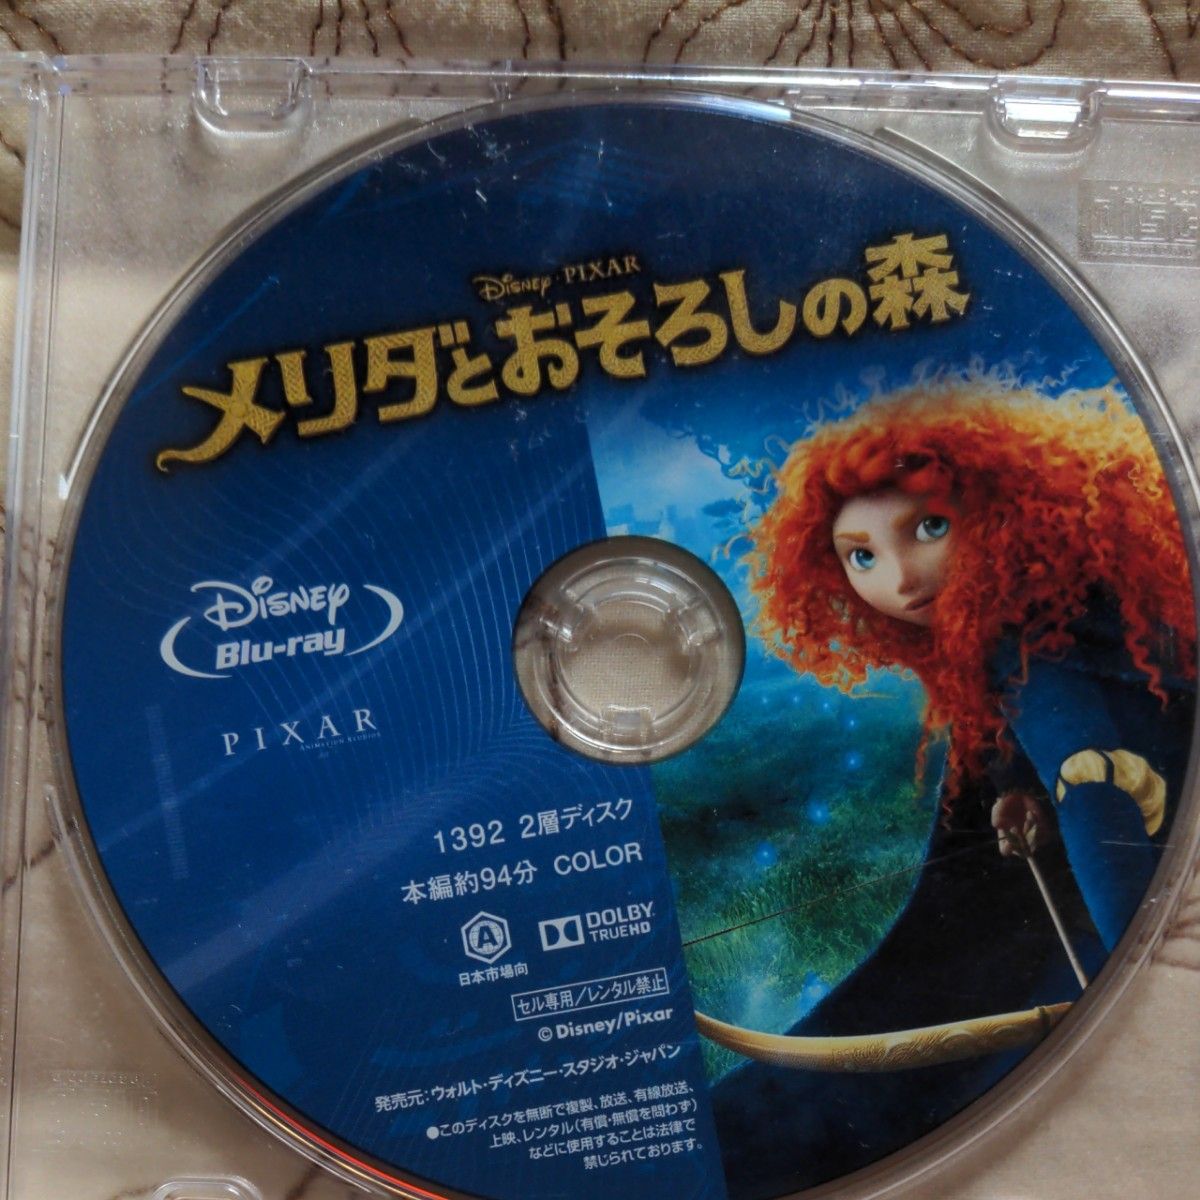 メルダとおそろしの森 Blu-ray ディスク単体出品